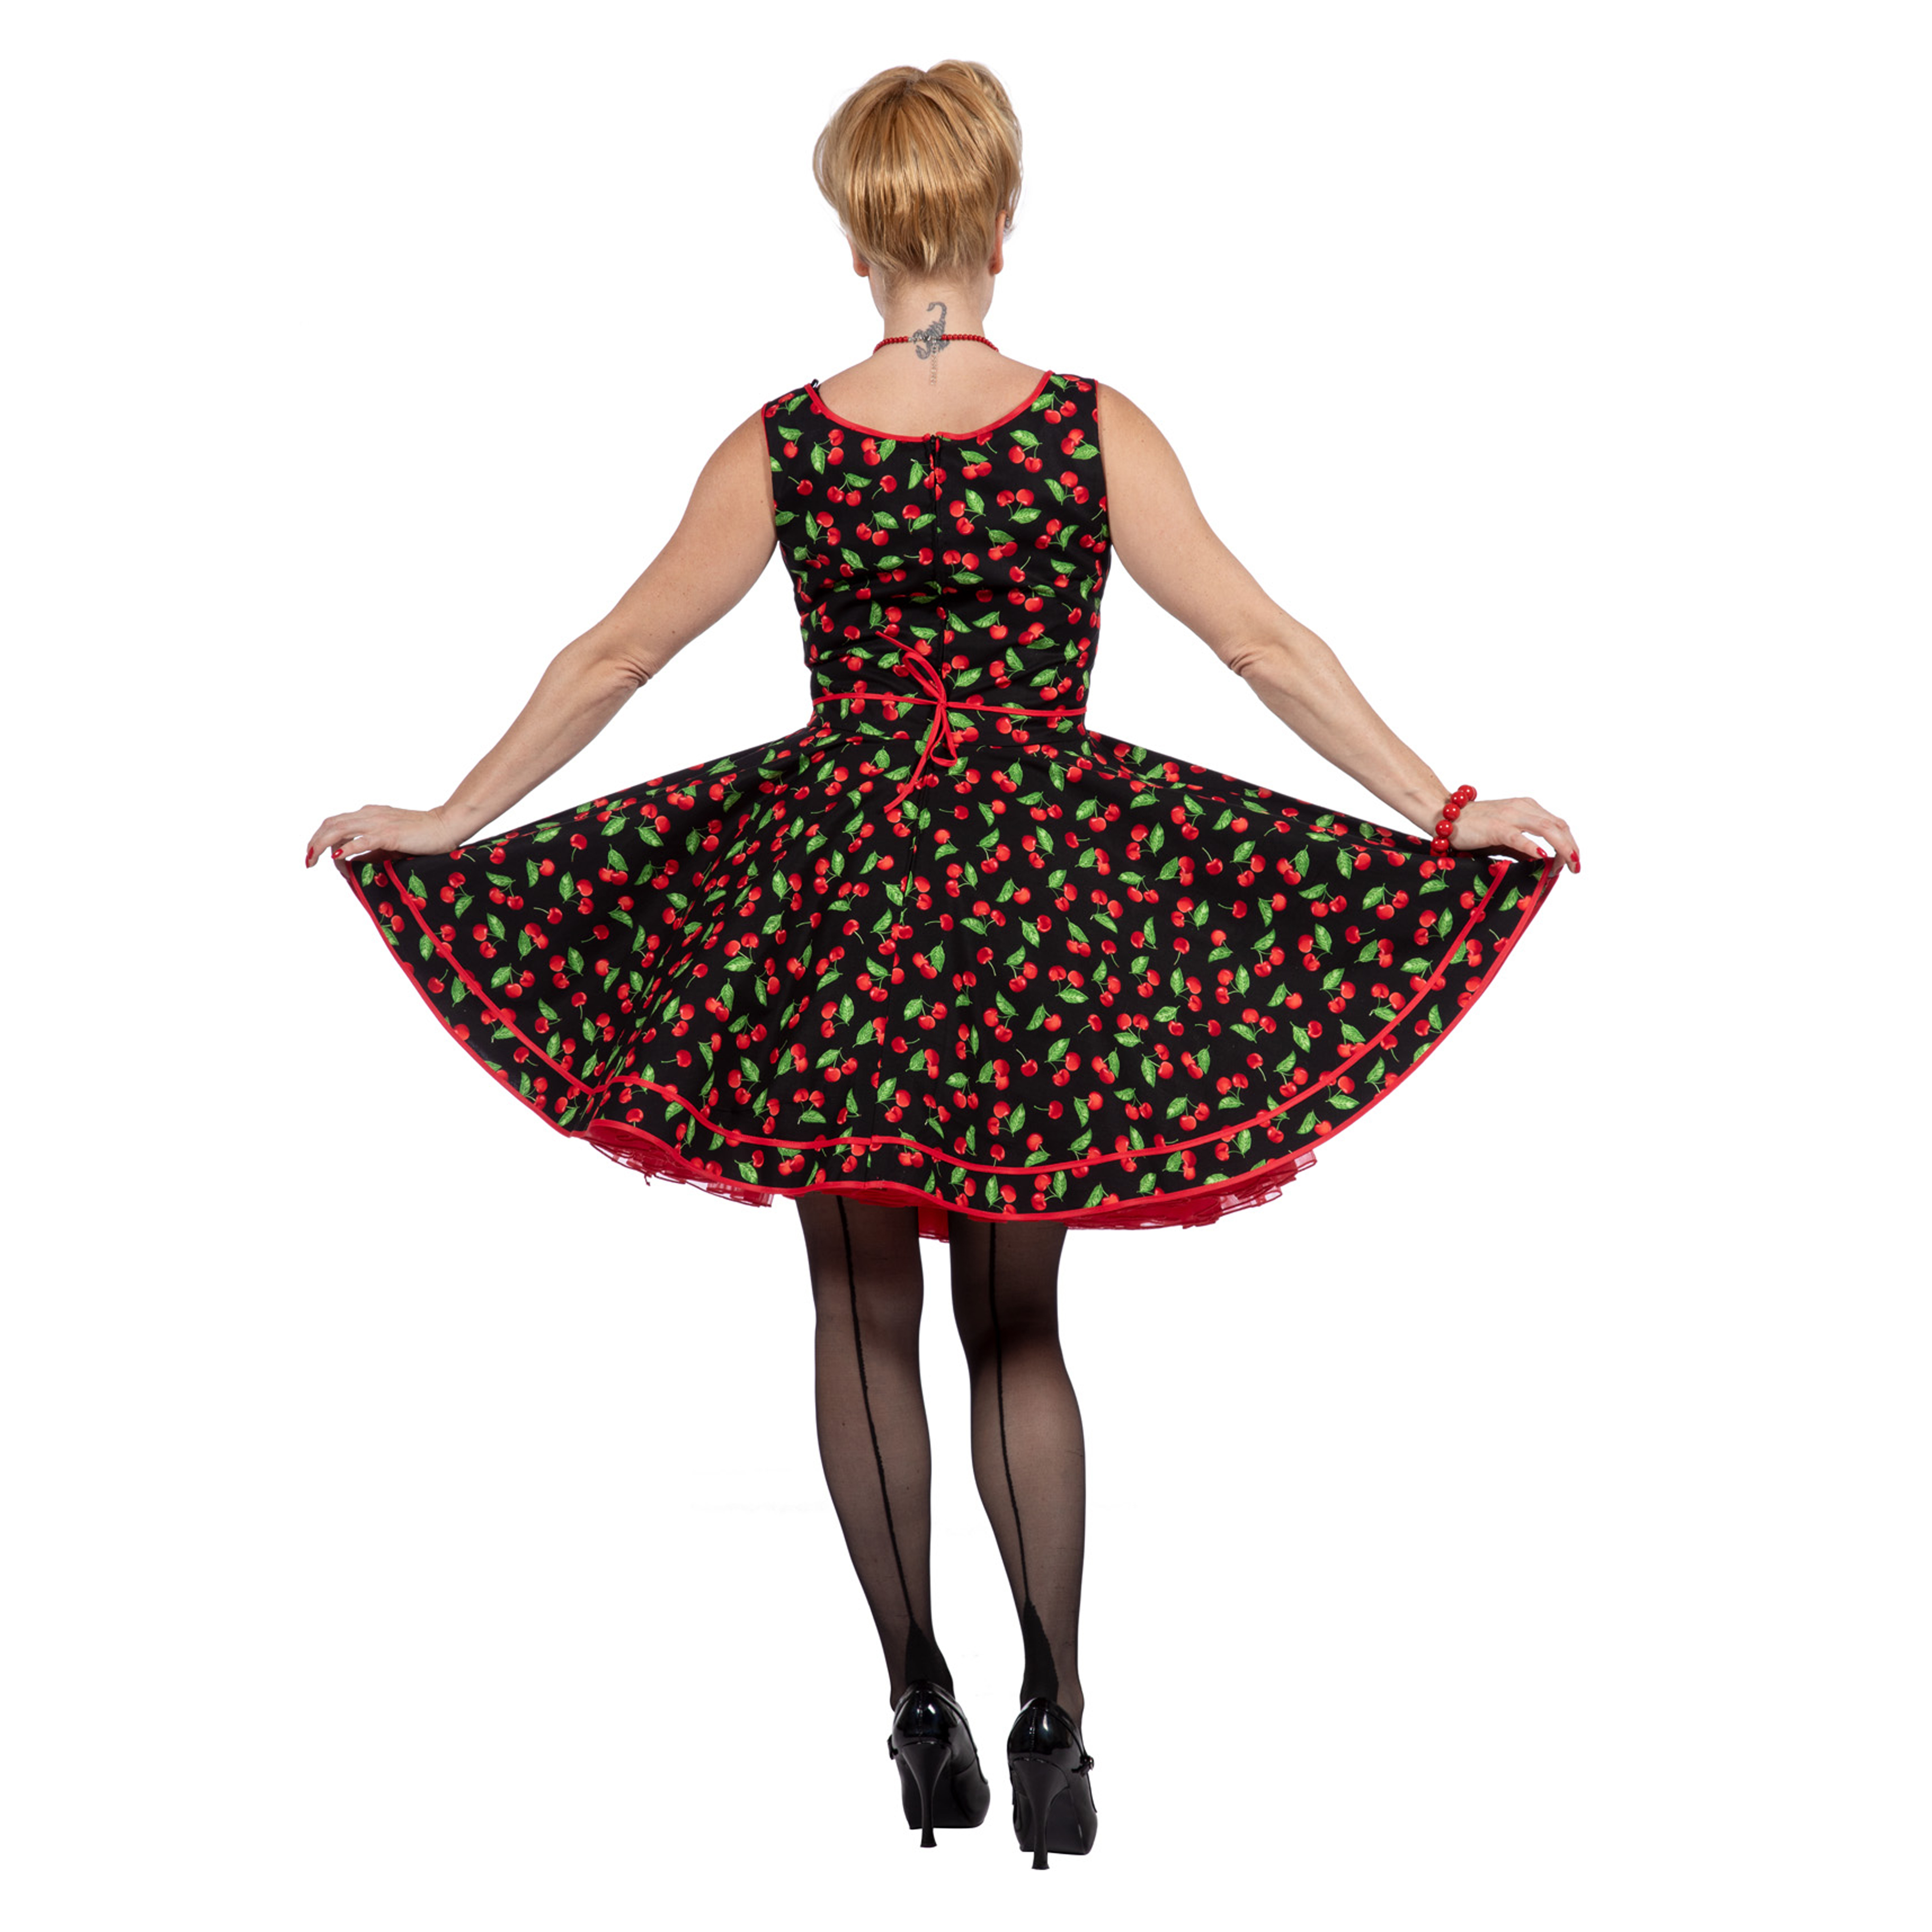 Premium-Line Damen-Kleid Rockabilly Cherry, Gr. 42 Bild 3